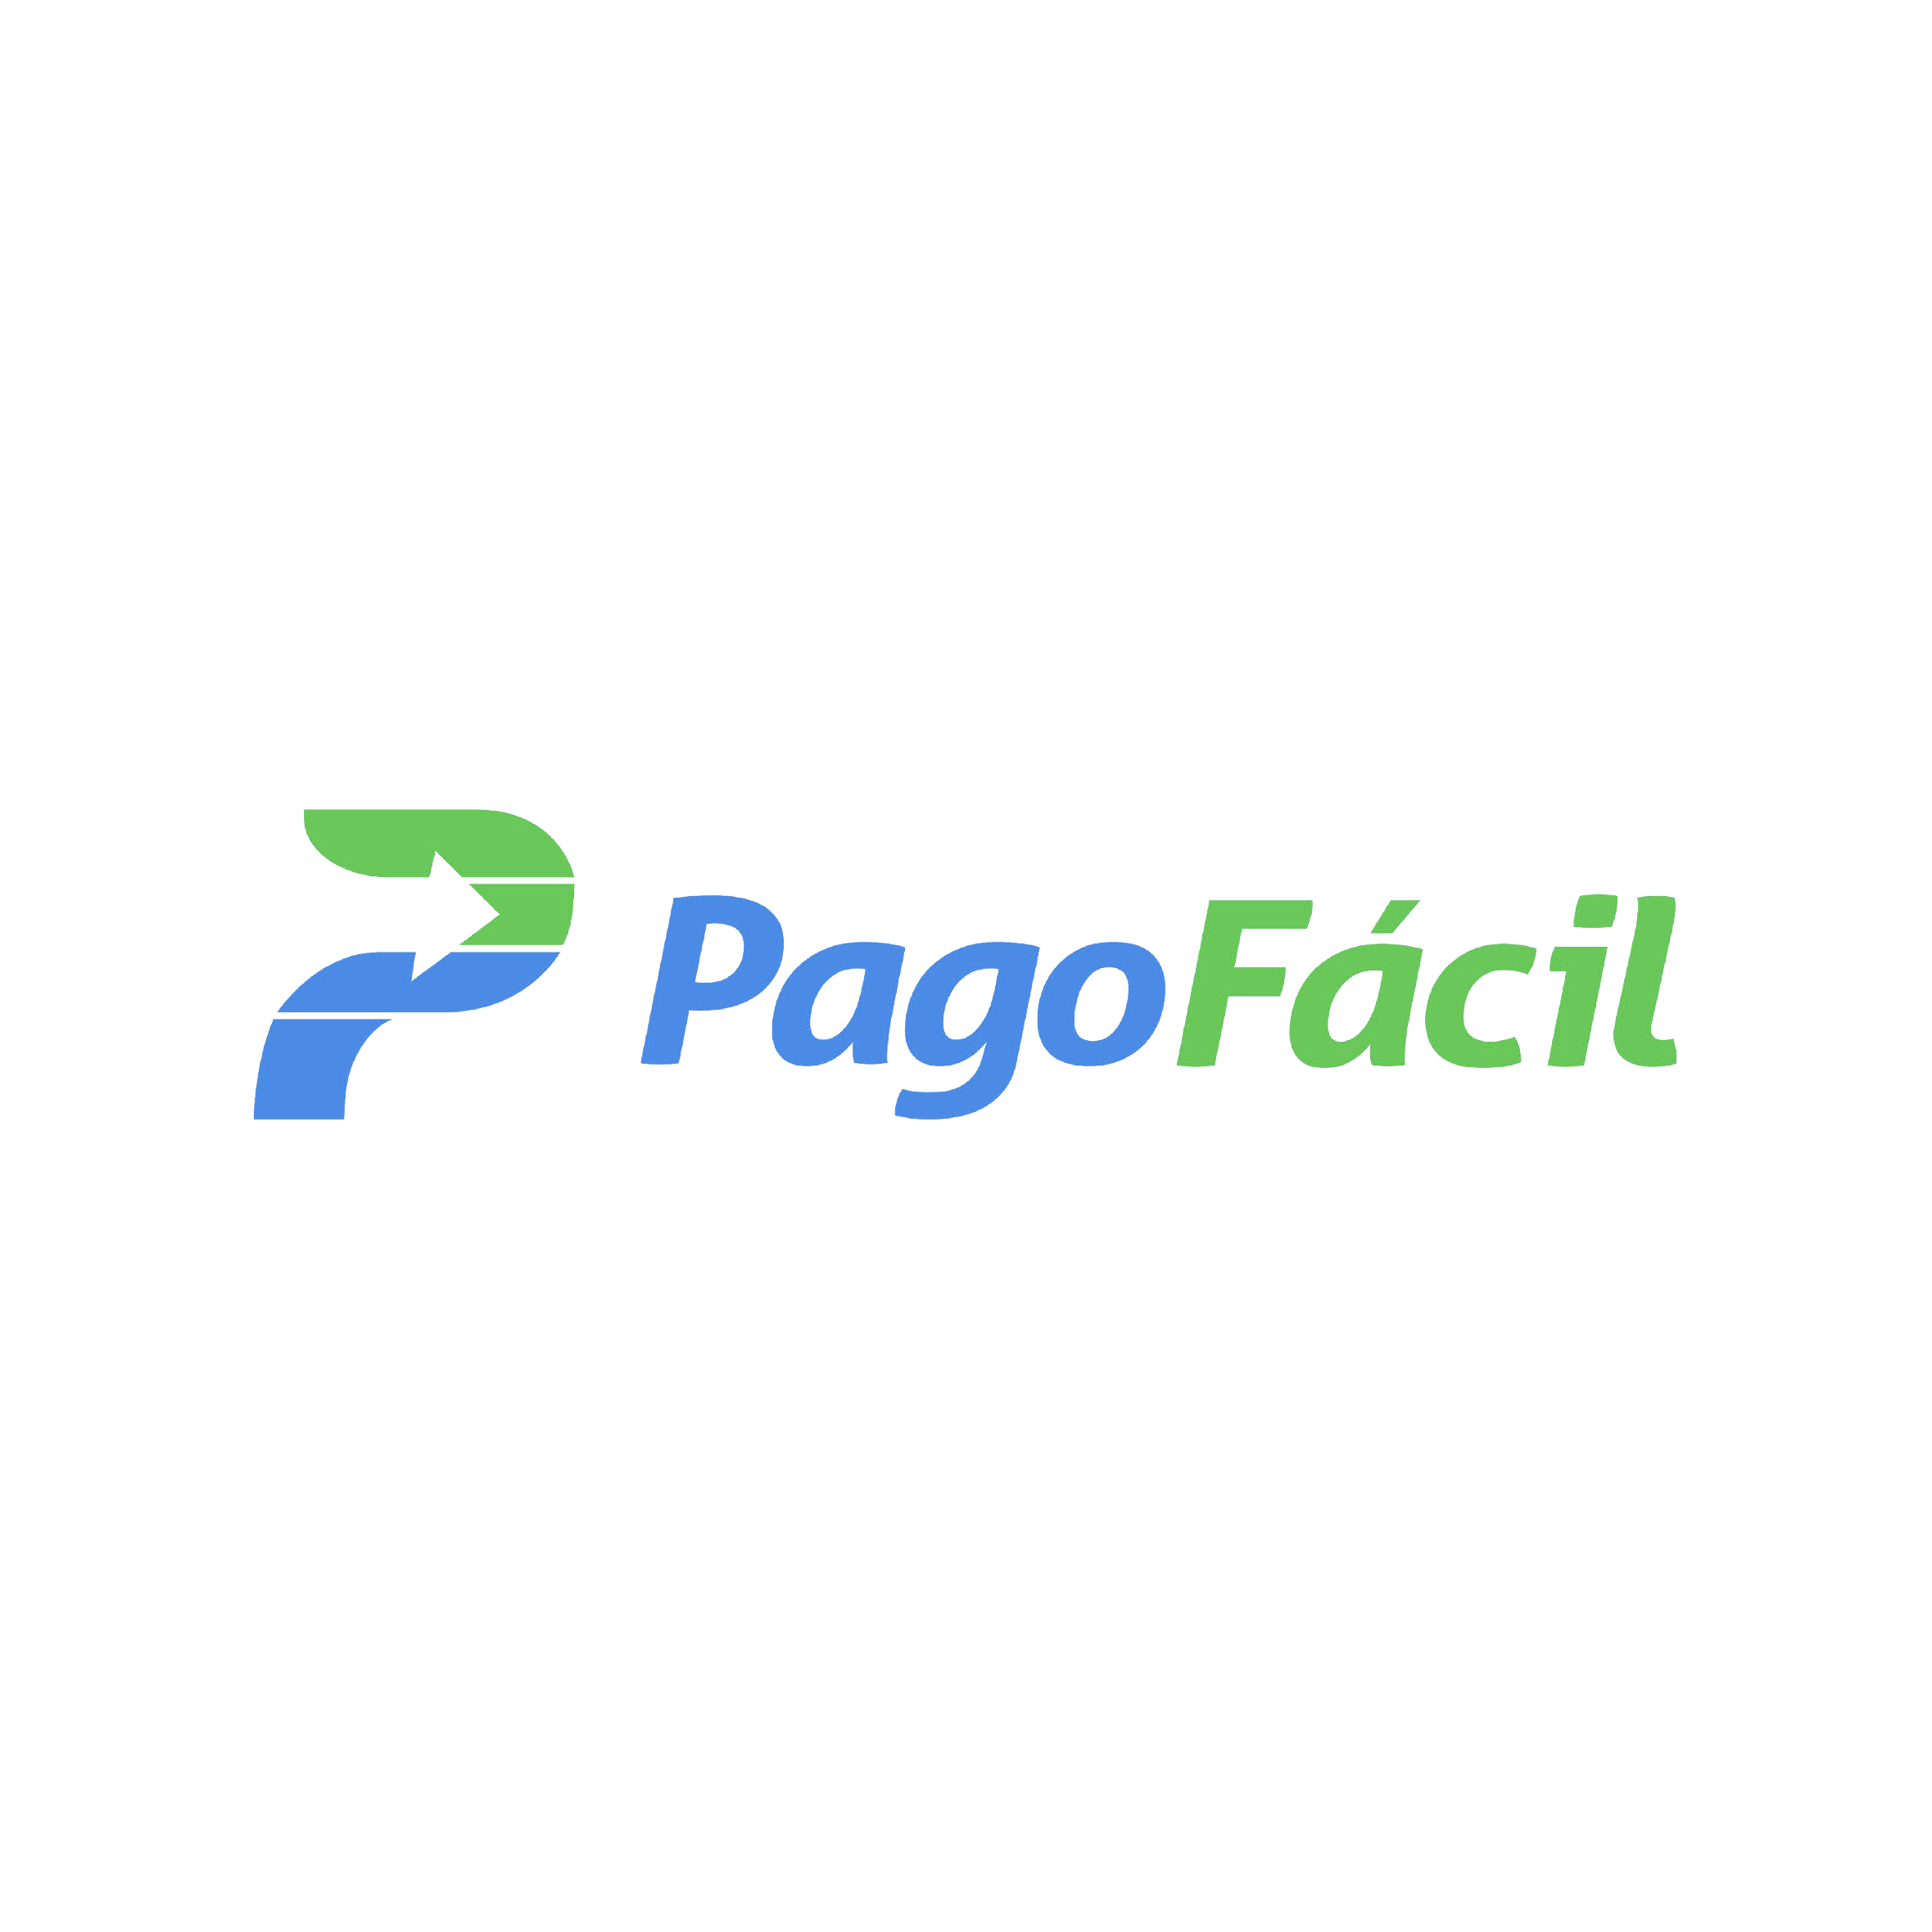 086_Pago Fácil